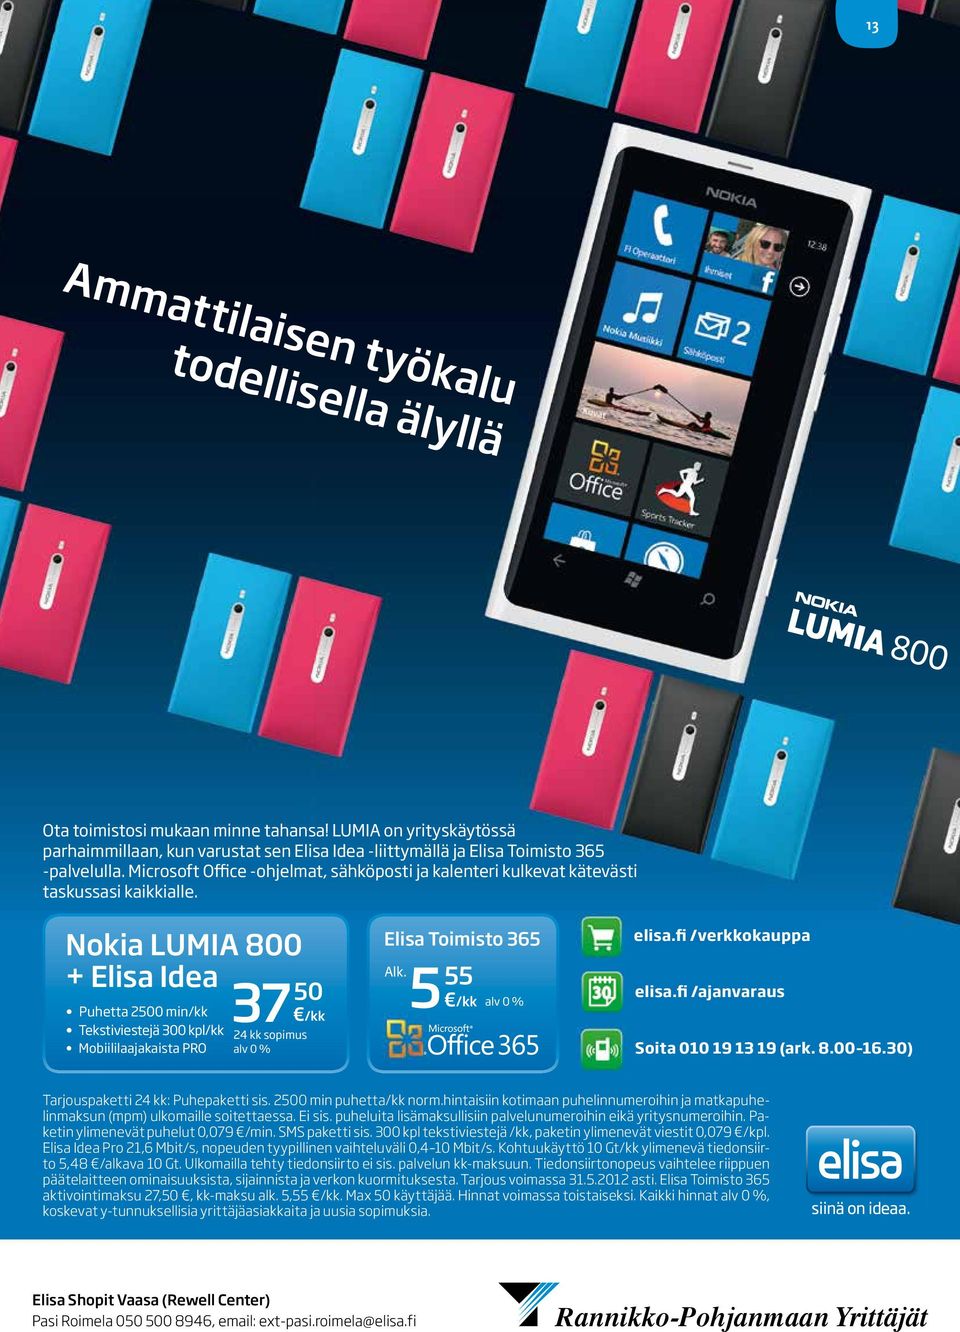 Nokia LUMIA 800 + Elisa Idea Puhetta 2500 min/kk Tekstiviestejä 300 kpl/kk Mobiililaajakaista PRO 37 50 /kk 24 kk sopimus alv 0 % Elisa Toimisto 365 Alk. 5 55 /kk alv 0 % elisa.fi /verkkokauppa elisa.